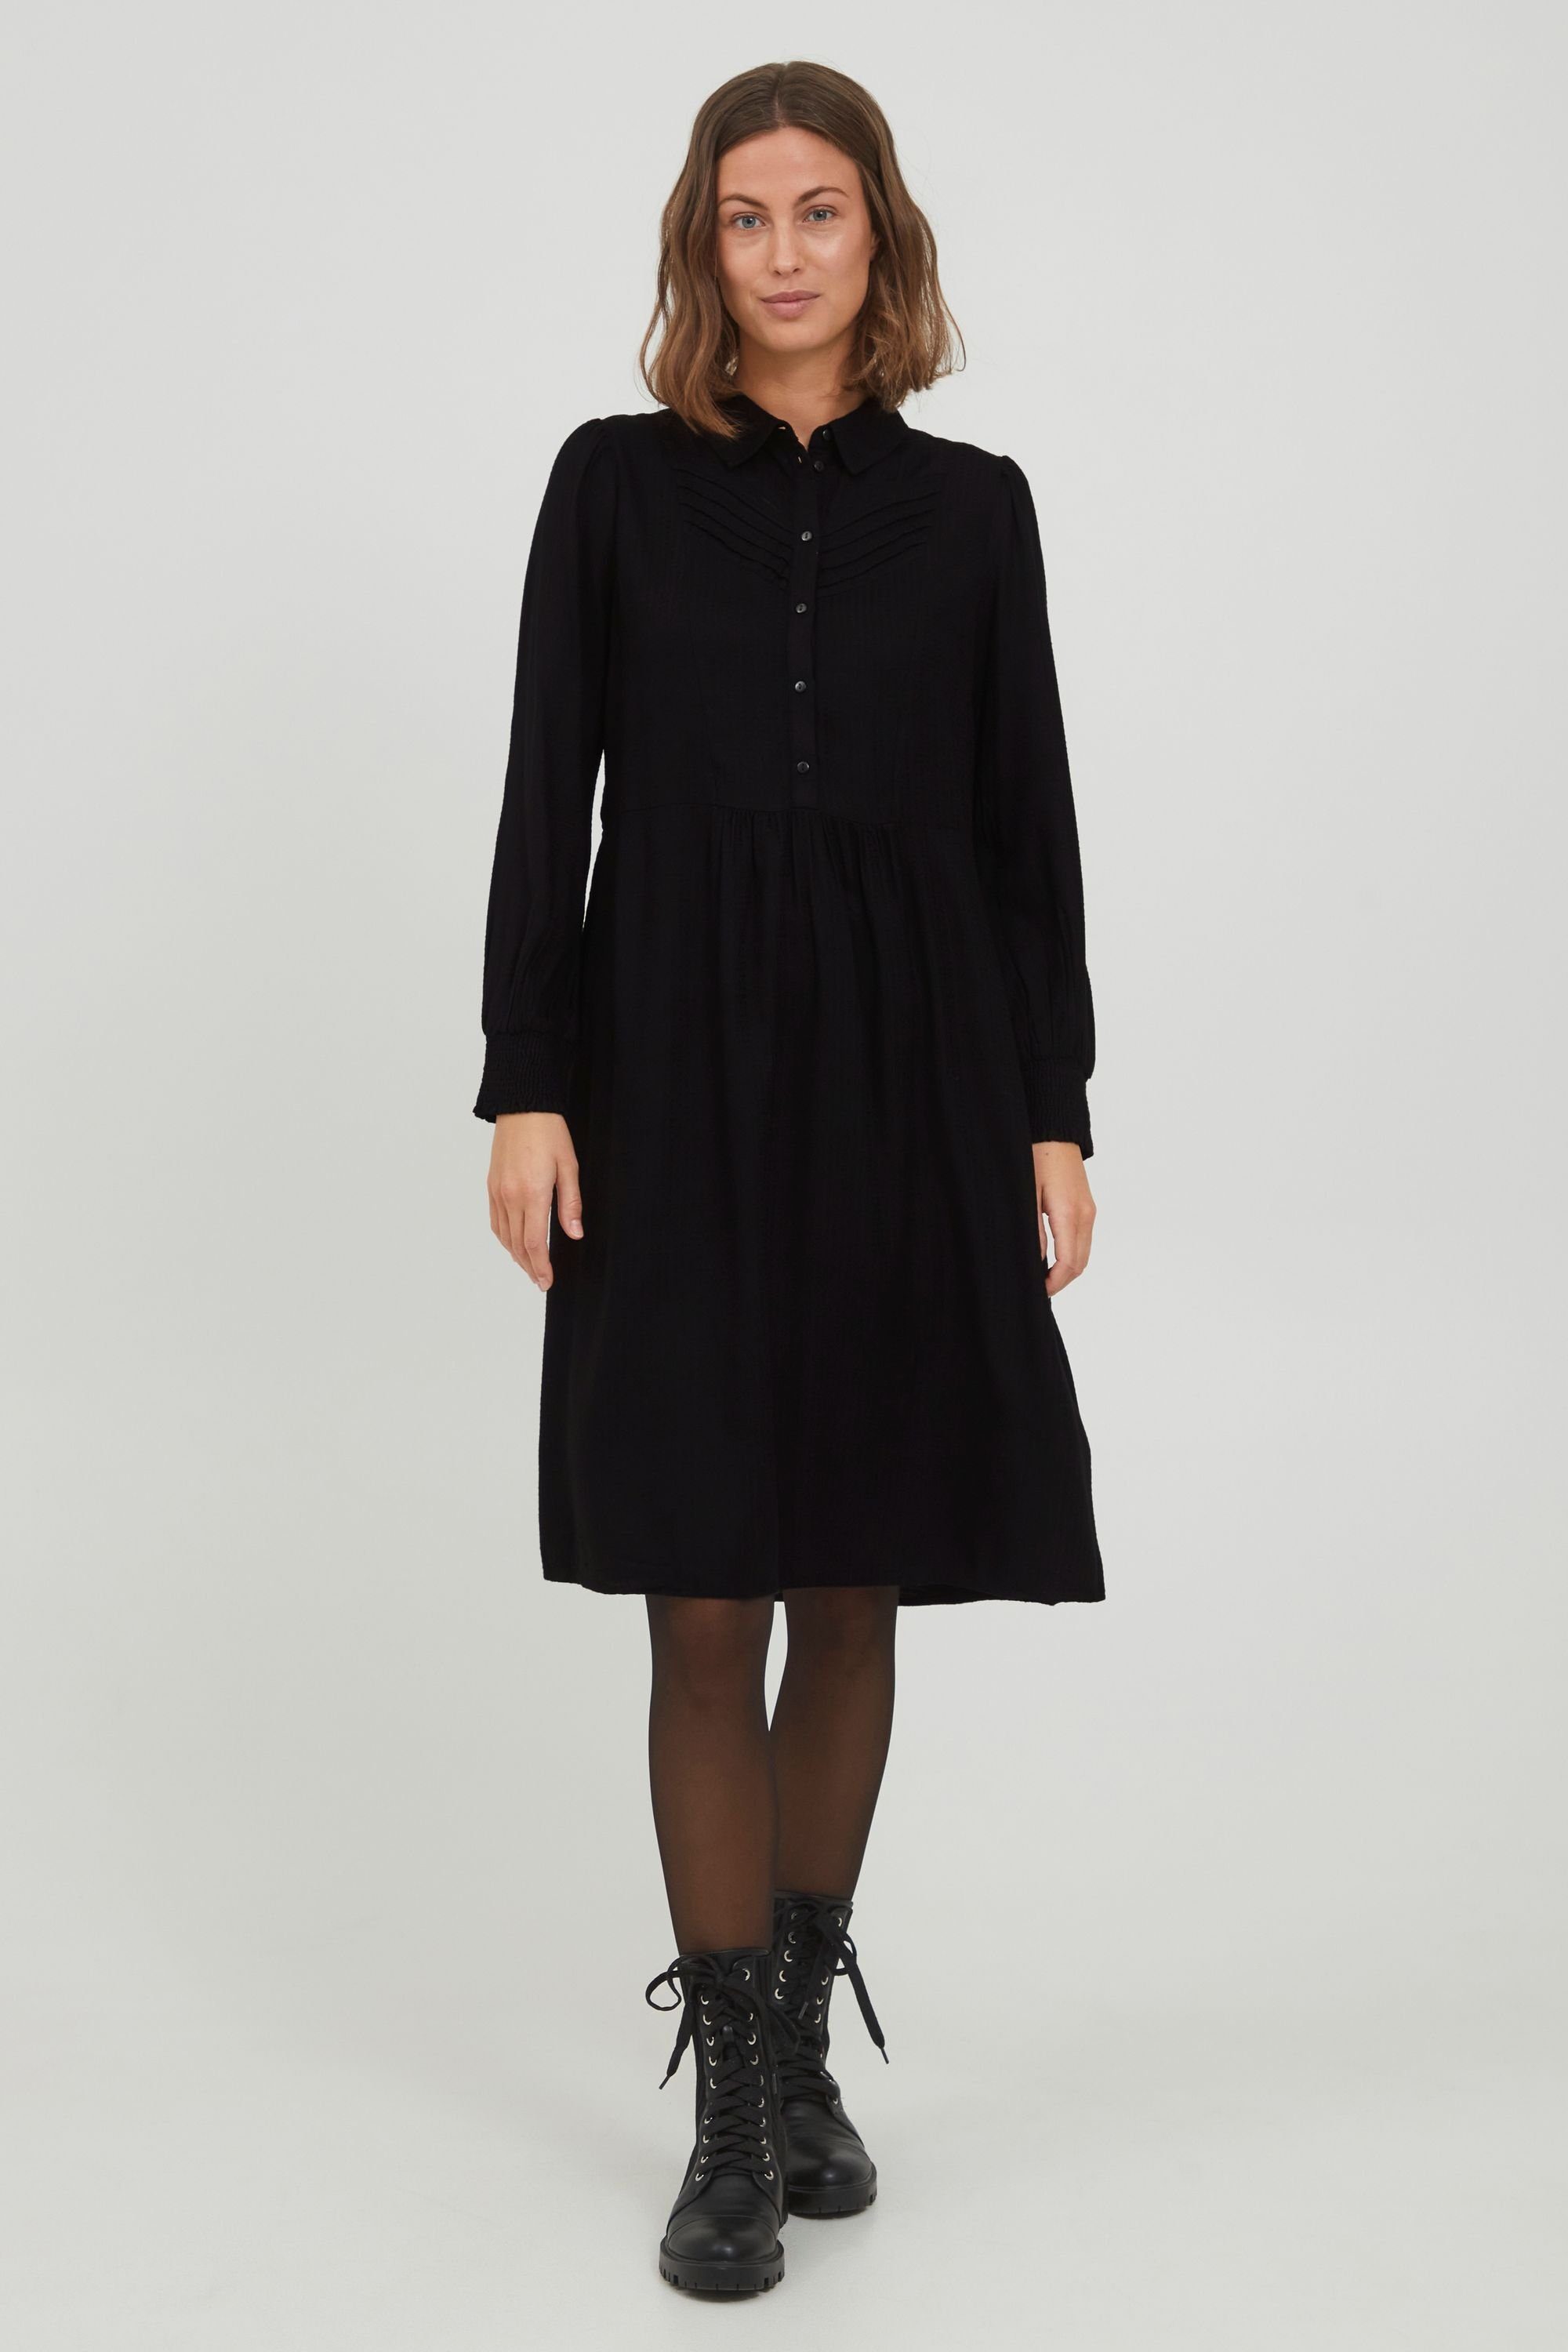 FRDAJAFLOW fransa - Hemdblusenkleid 1 Fransa Black 20609996 Dress